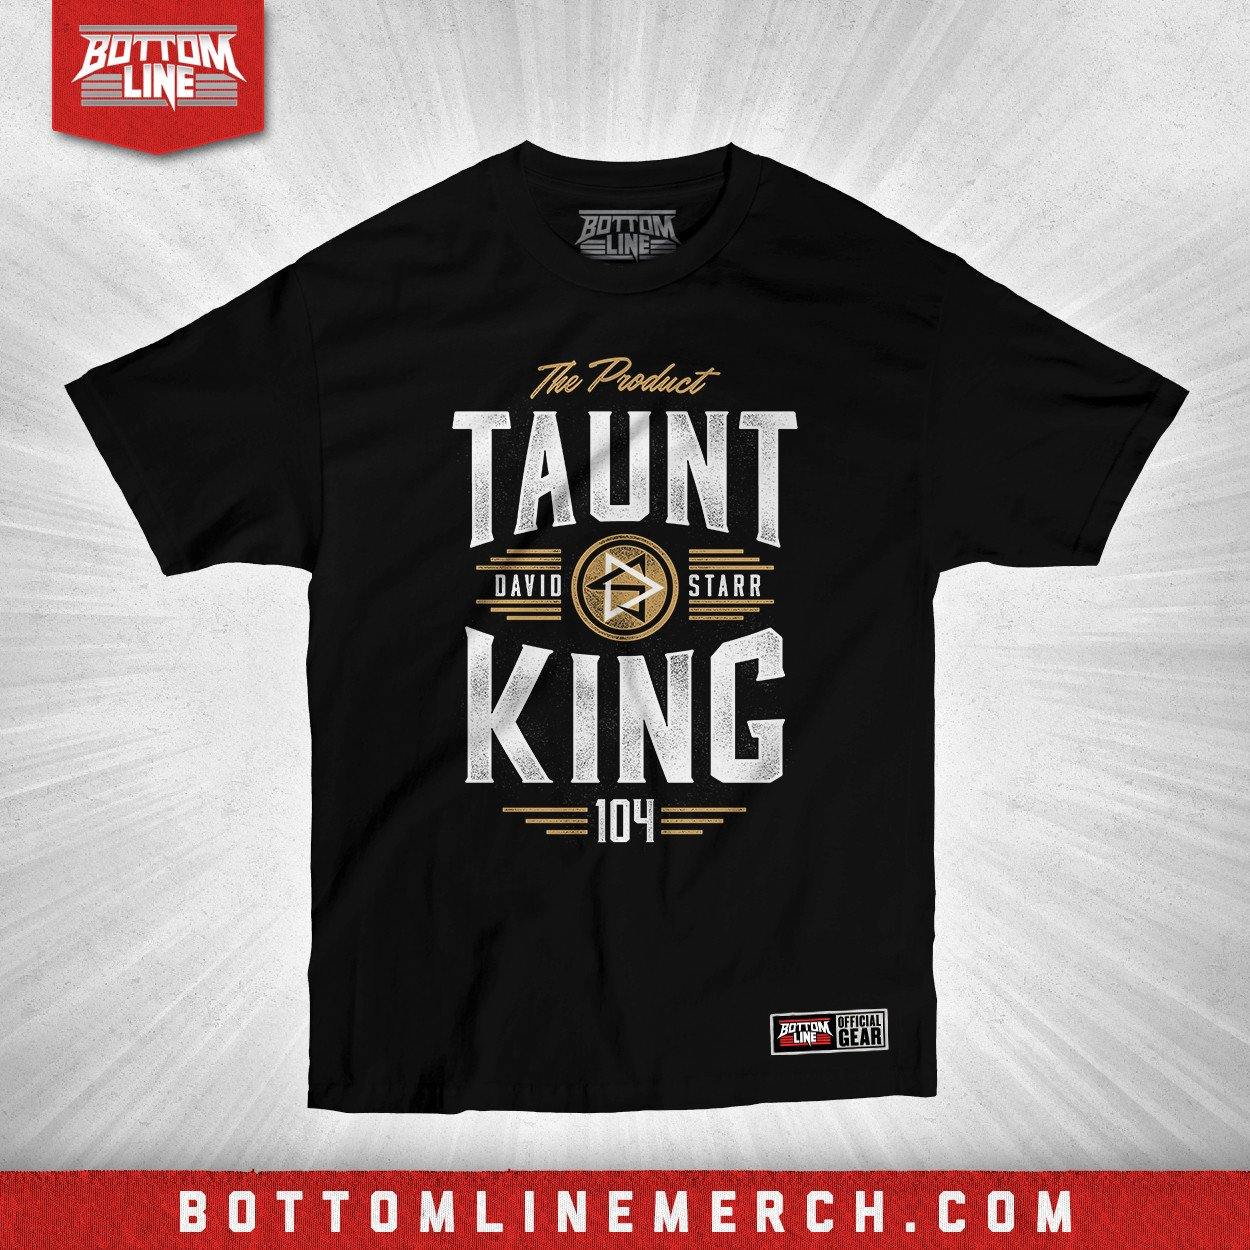 Buy Now – David Starr "Taunt King" Shirt – Wrestler & Wrestling Merch – Bottom Line